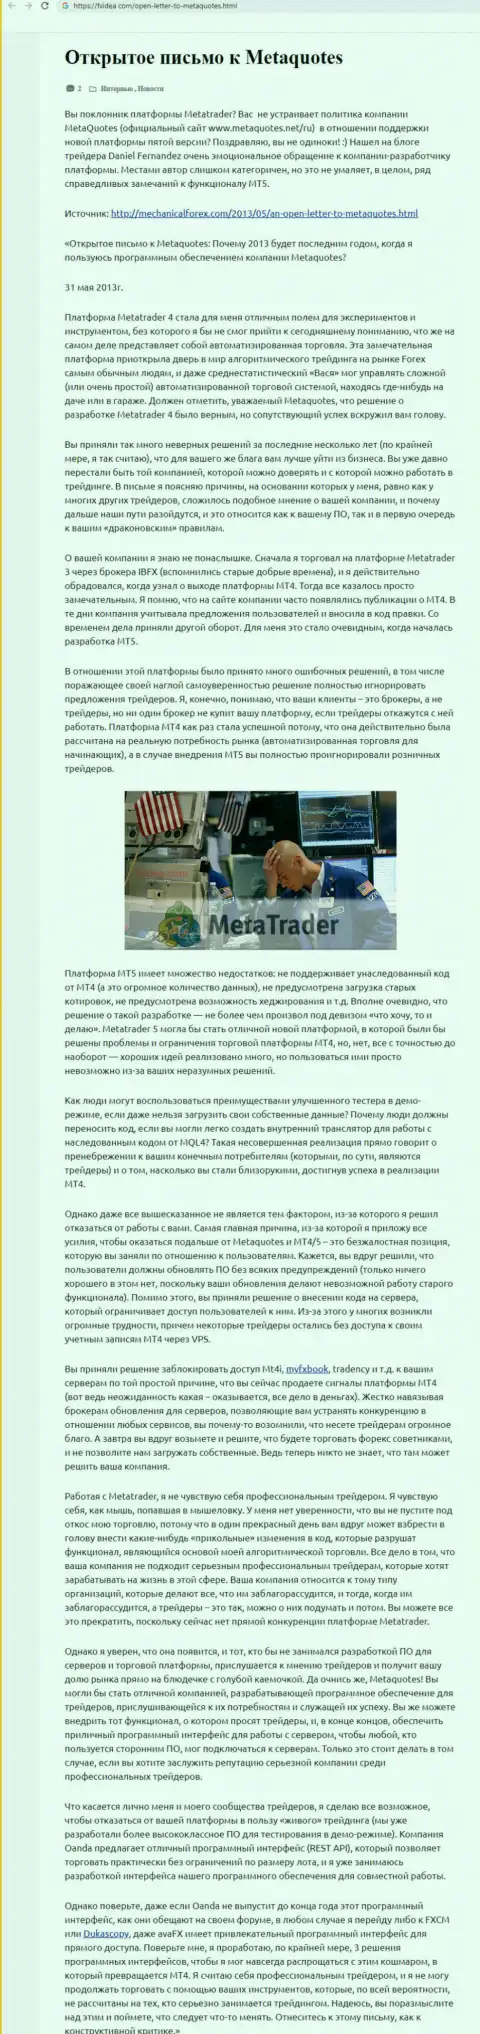 Реальный отзыв валютного трейдера махинаторов MetaQuotes Software Corp, в котором он обозначил свое собственное мнение об этой компании